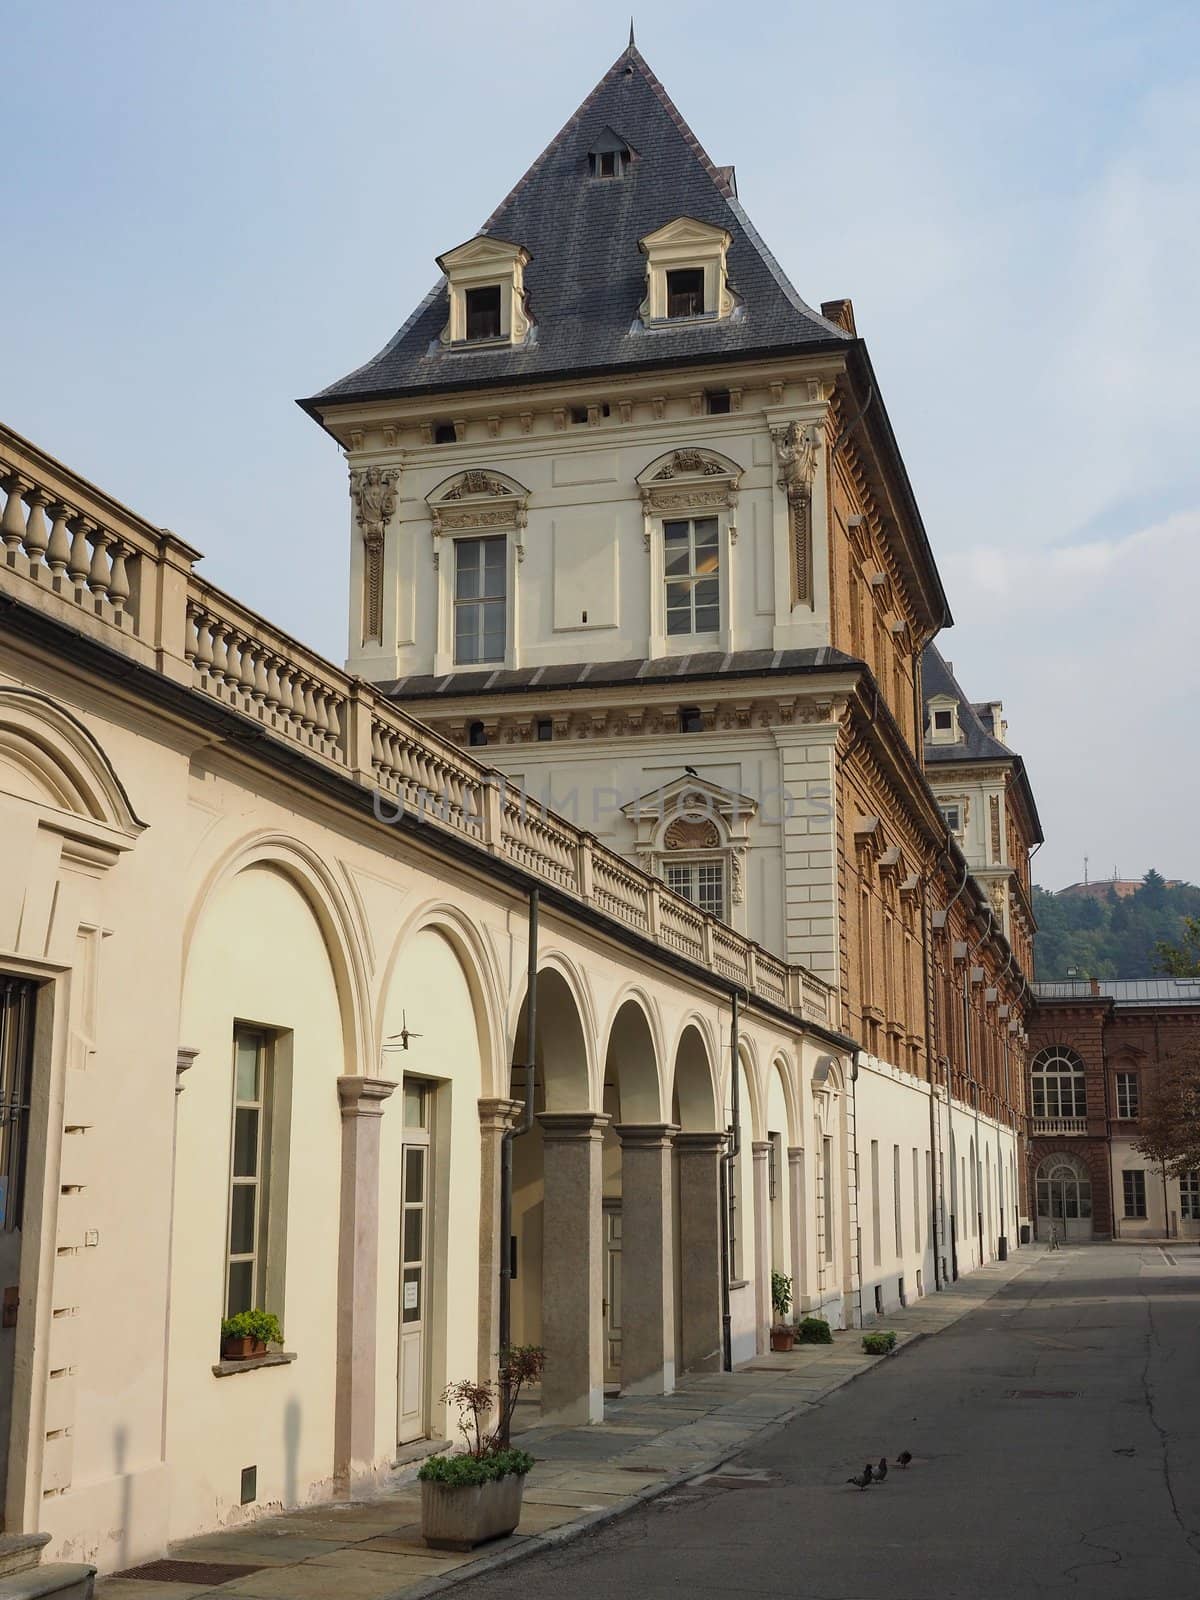 TURIN, ITALY - CIRCA OCTOBER 2019: Castello del Valentino baroque castle